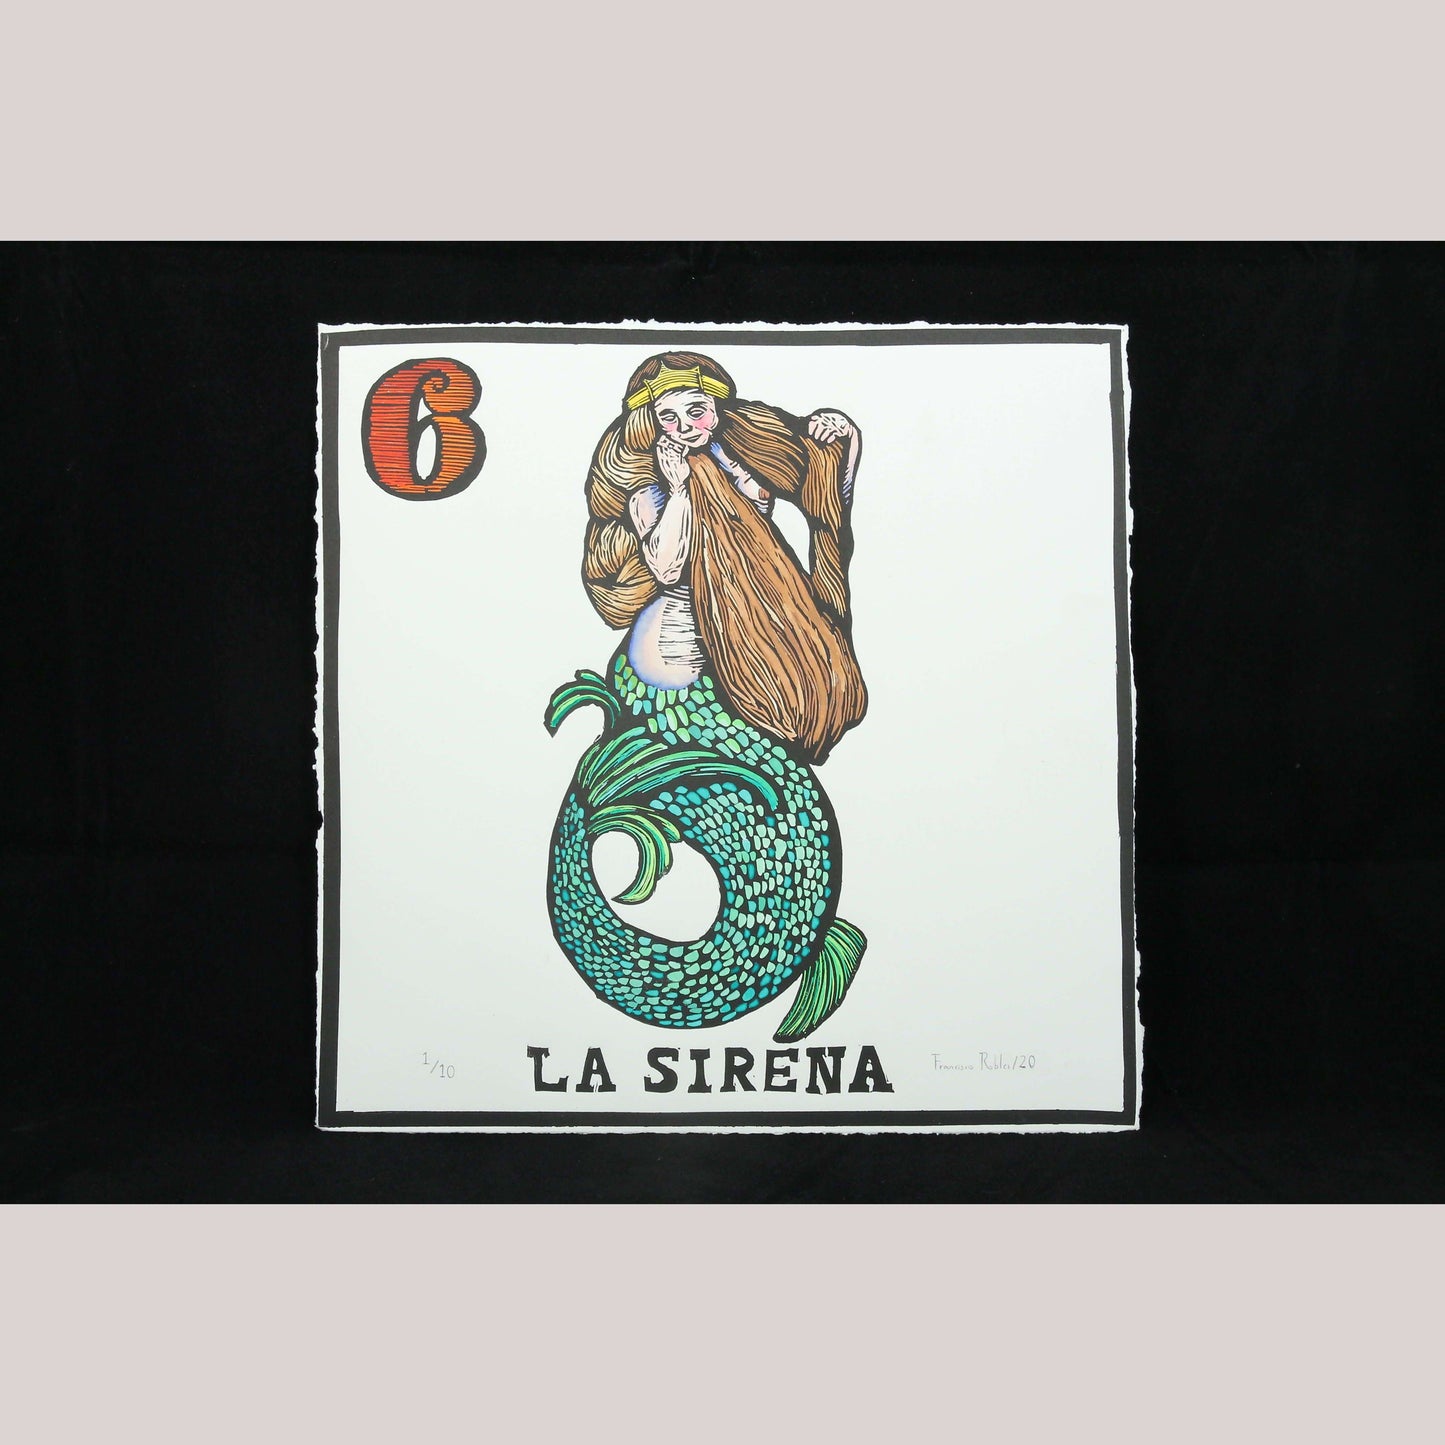 LA SIRENA - THE MERMAID